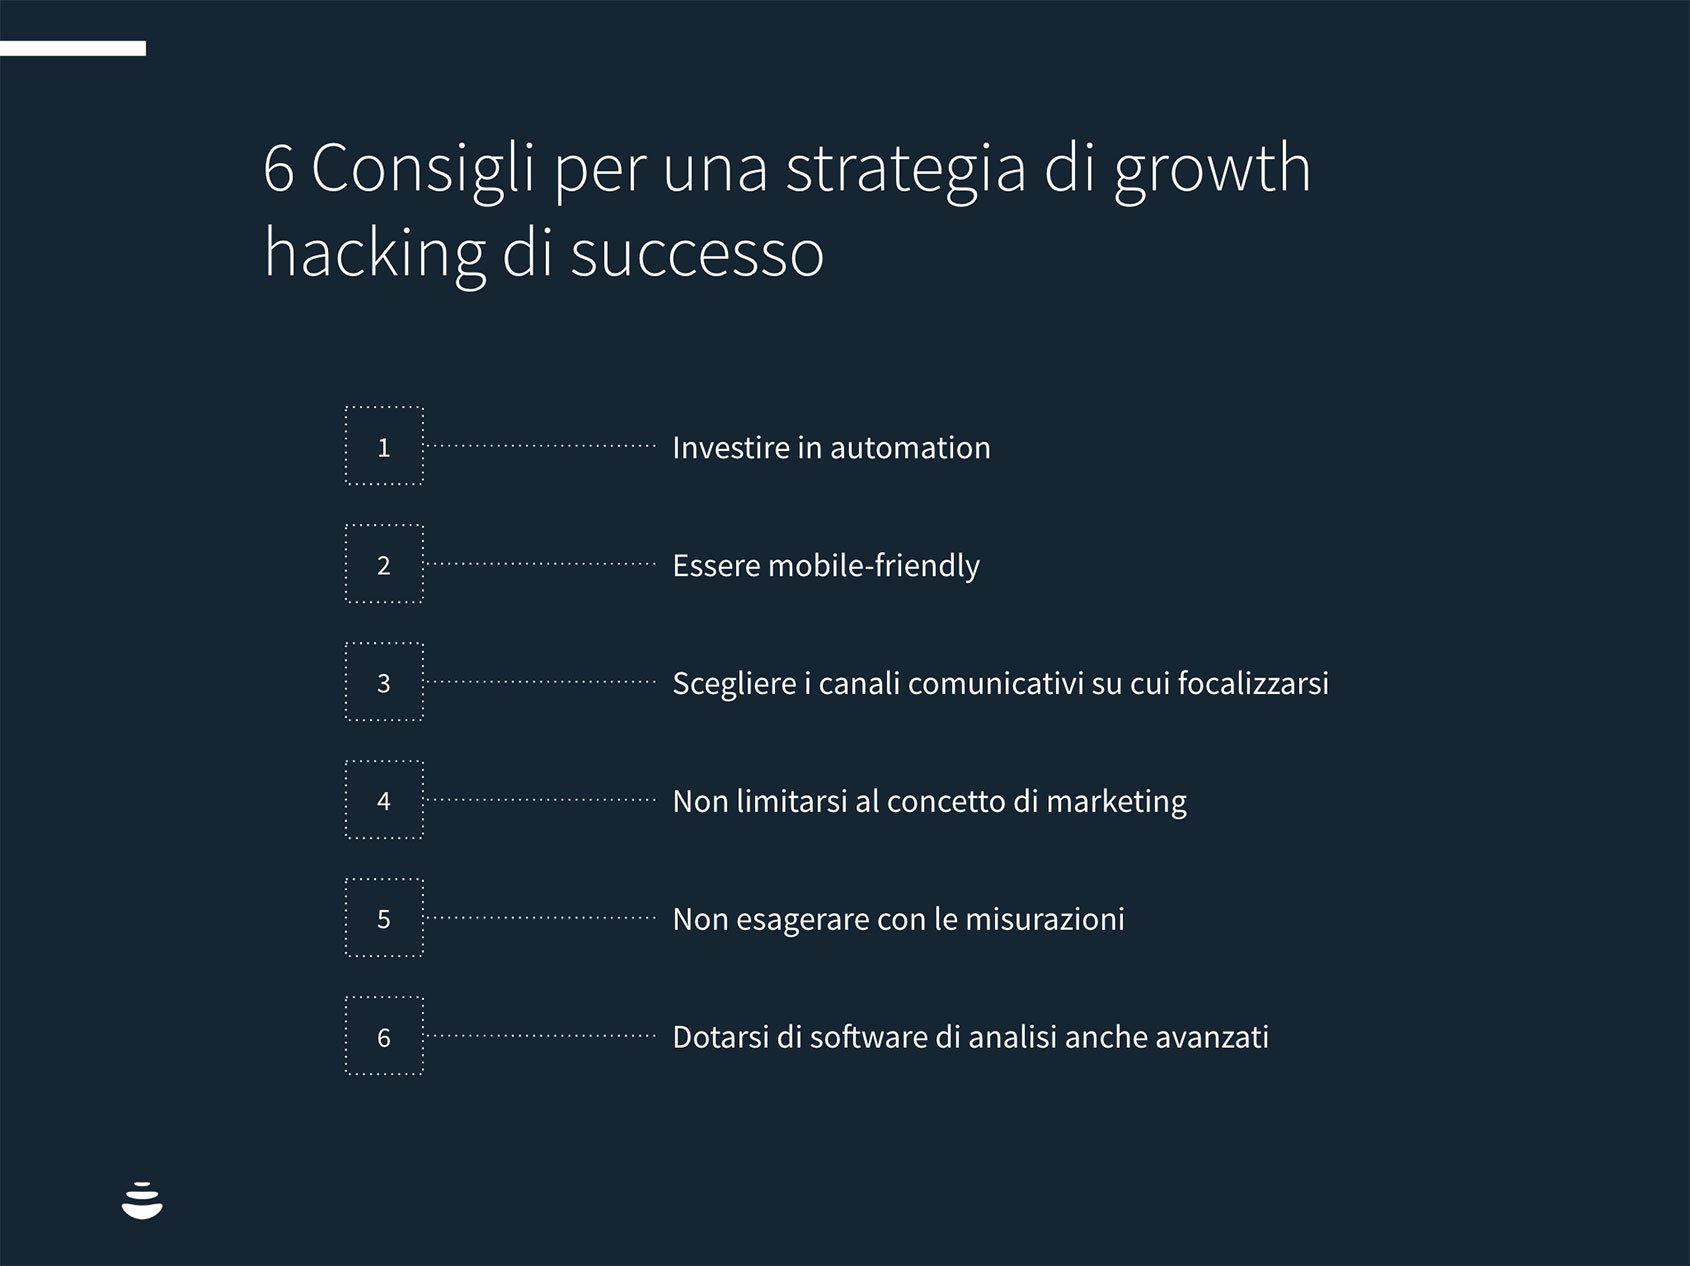 Growth Hacking - Cosa Significa e Come Aiuta Le Aziende A Crescere